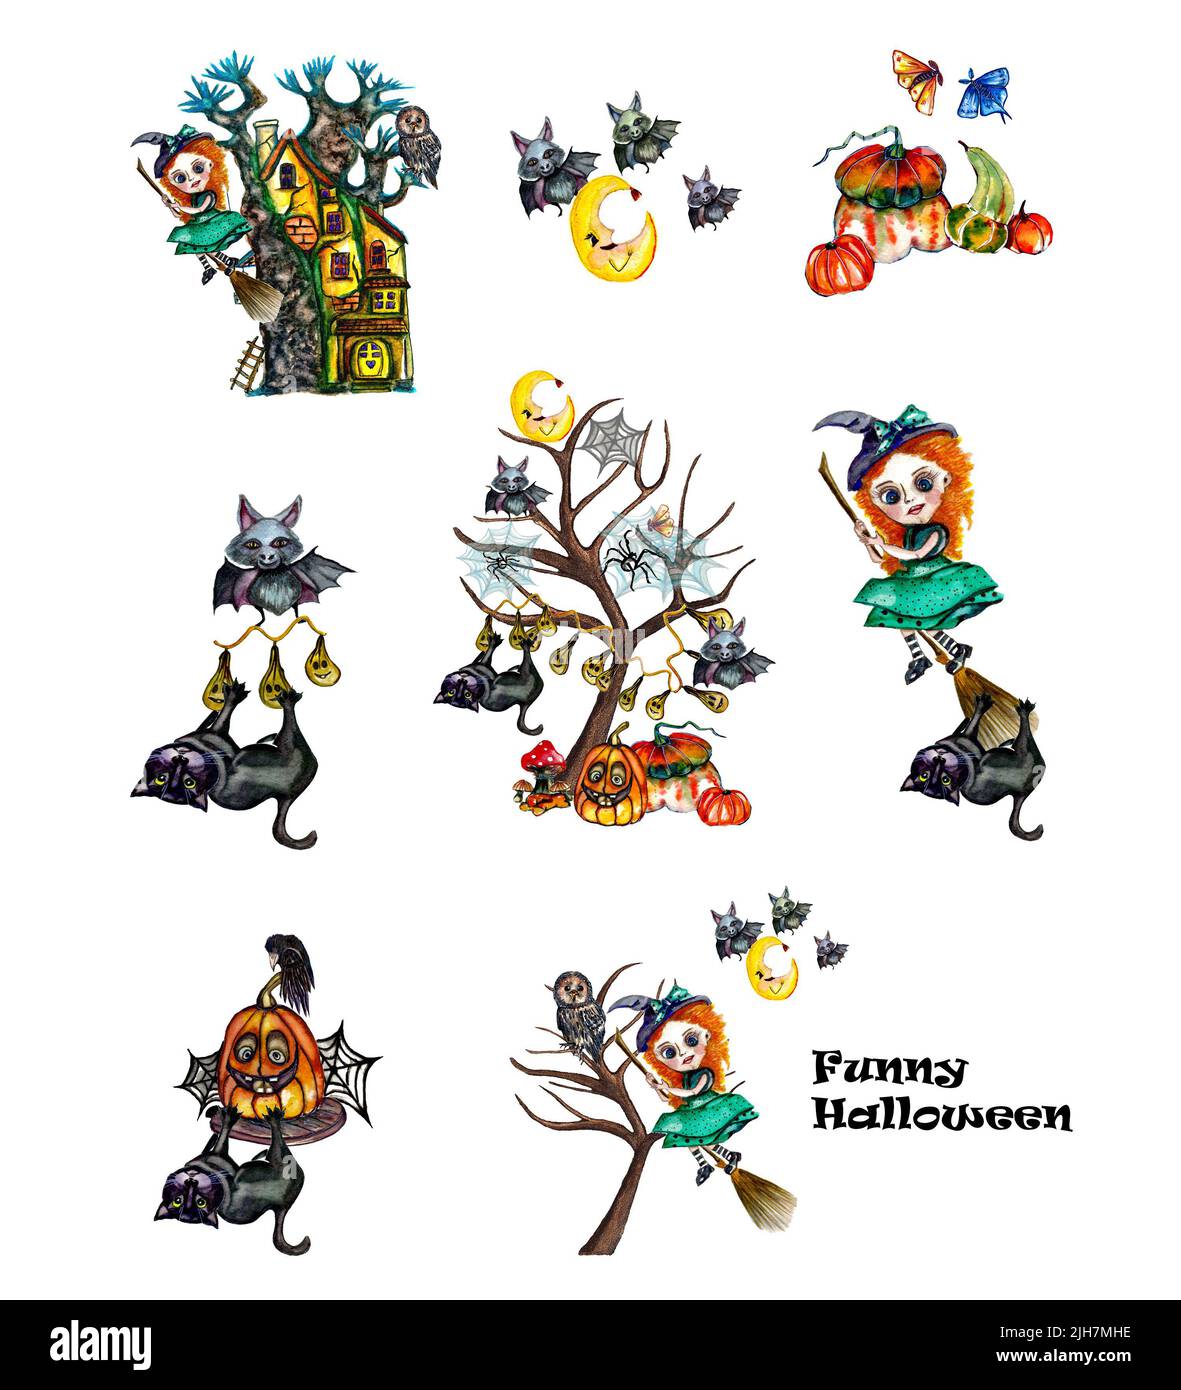 Acquerello cute halloween composizioni set.Halloween divertente collezione con illustrazioni a mano disegnate di strega, gatto nero, raven, gufo, zucca, ragno, pipistrello Foto Stock